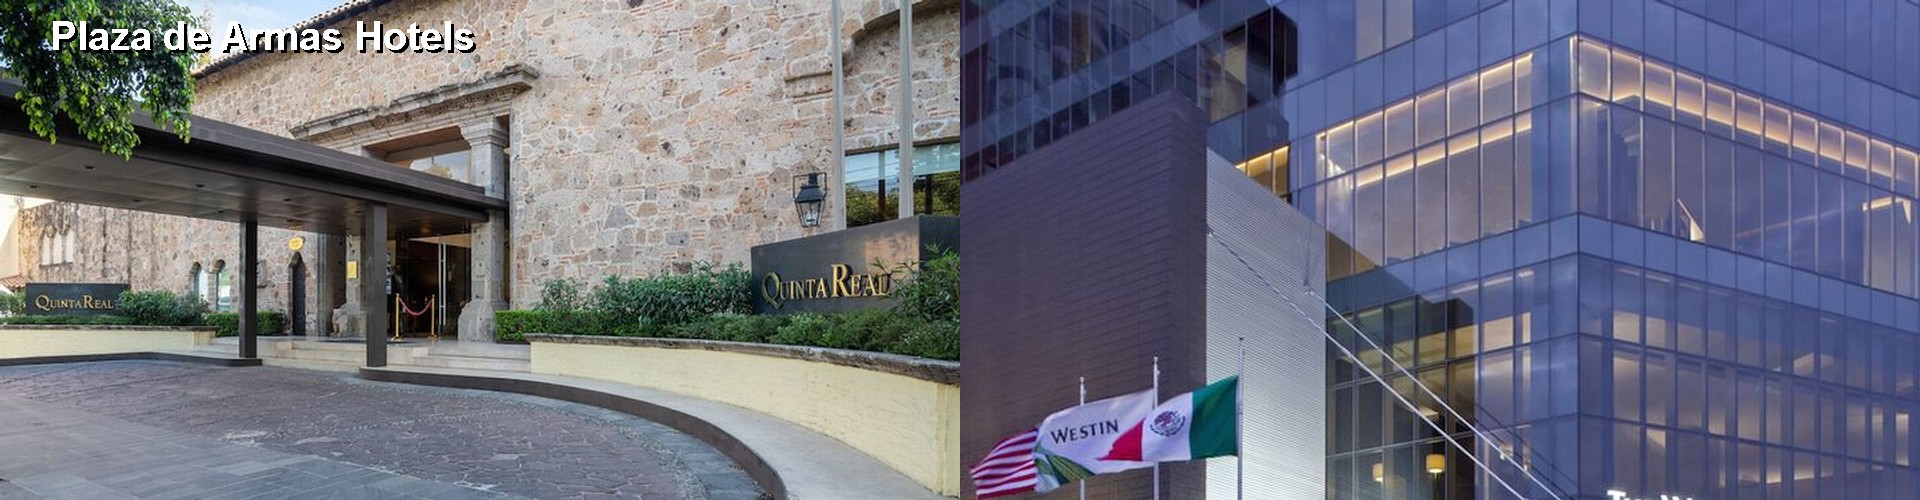 5 Best Hotels near Plaza de Armas